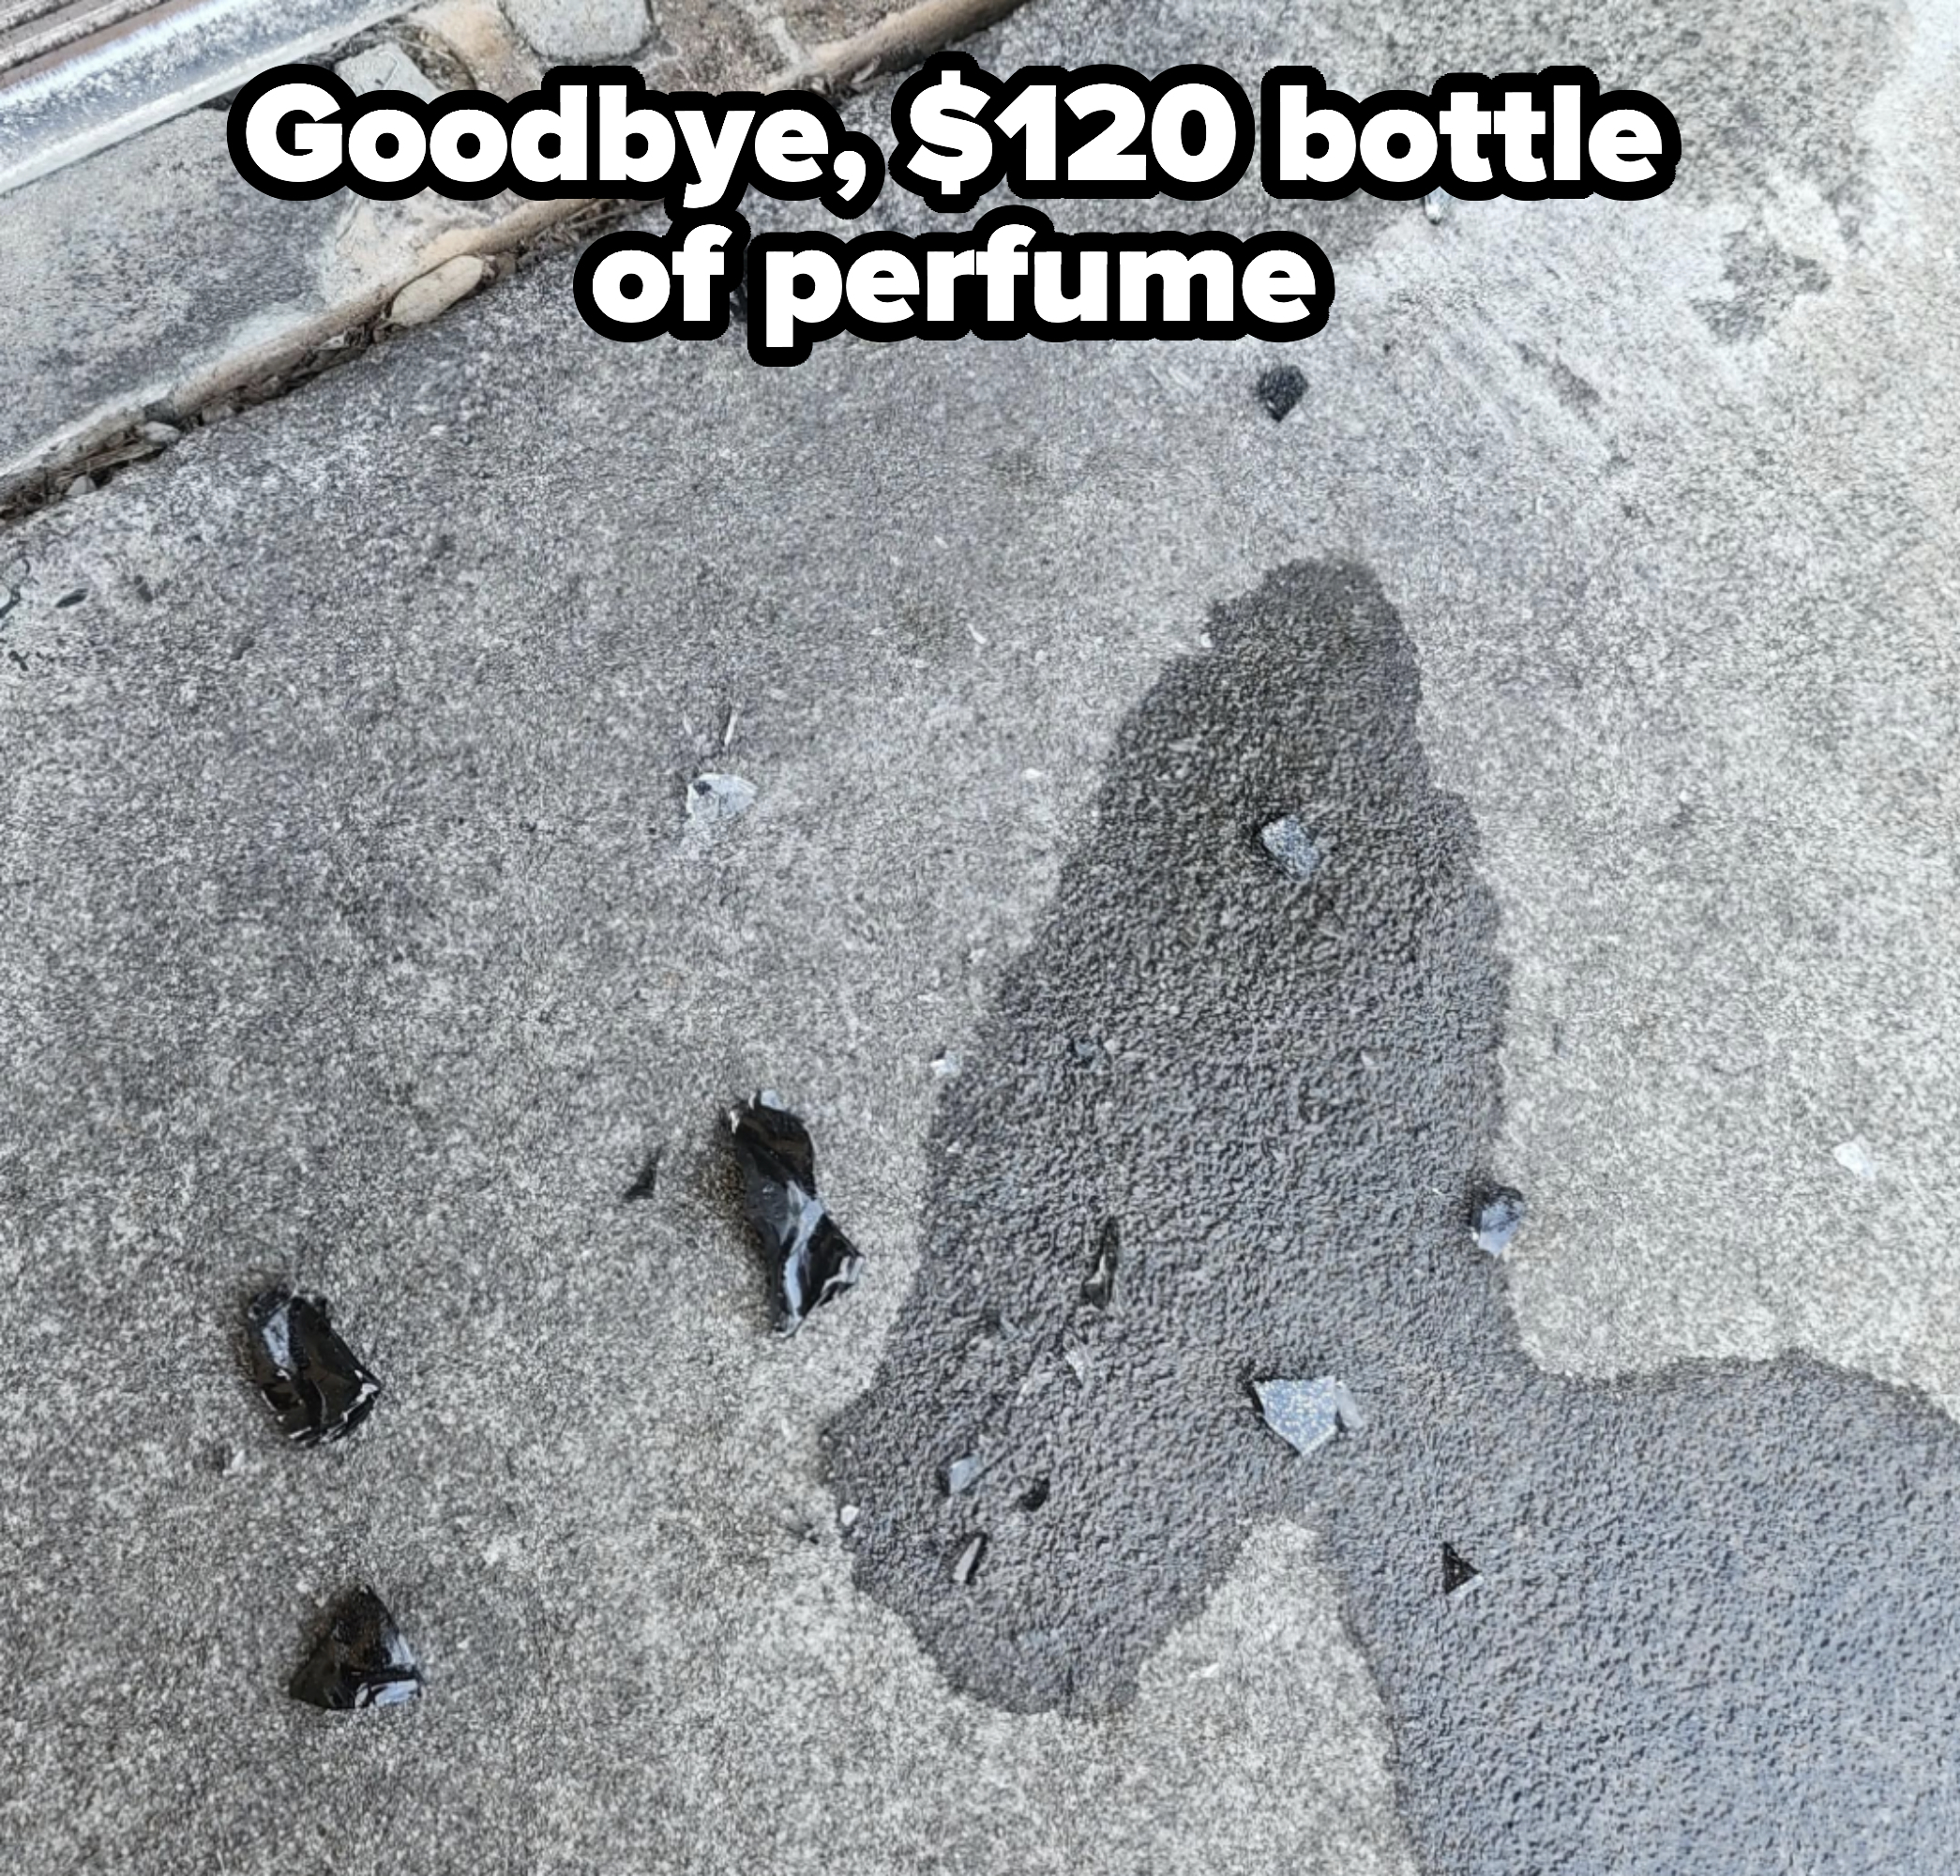 A broken bottle of perfume